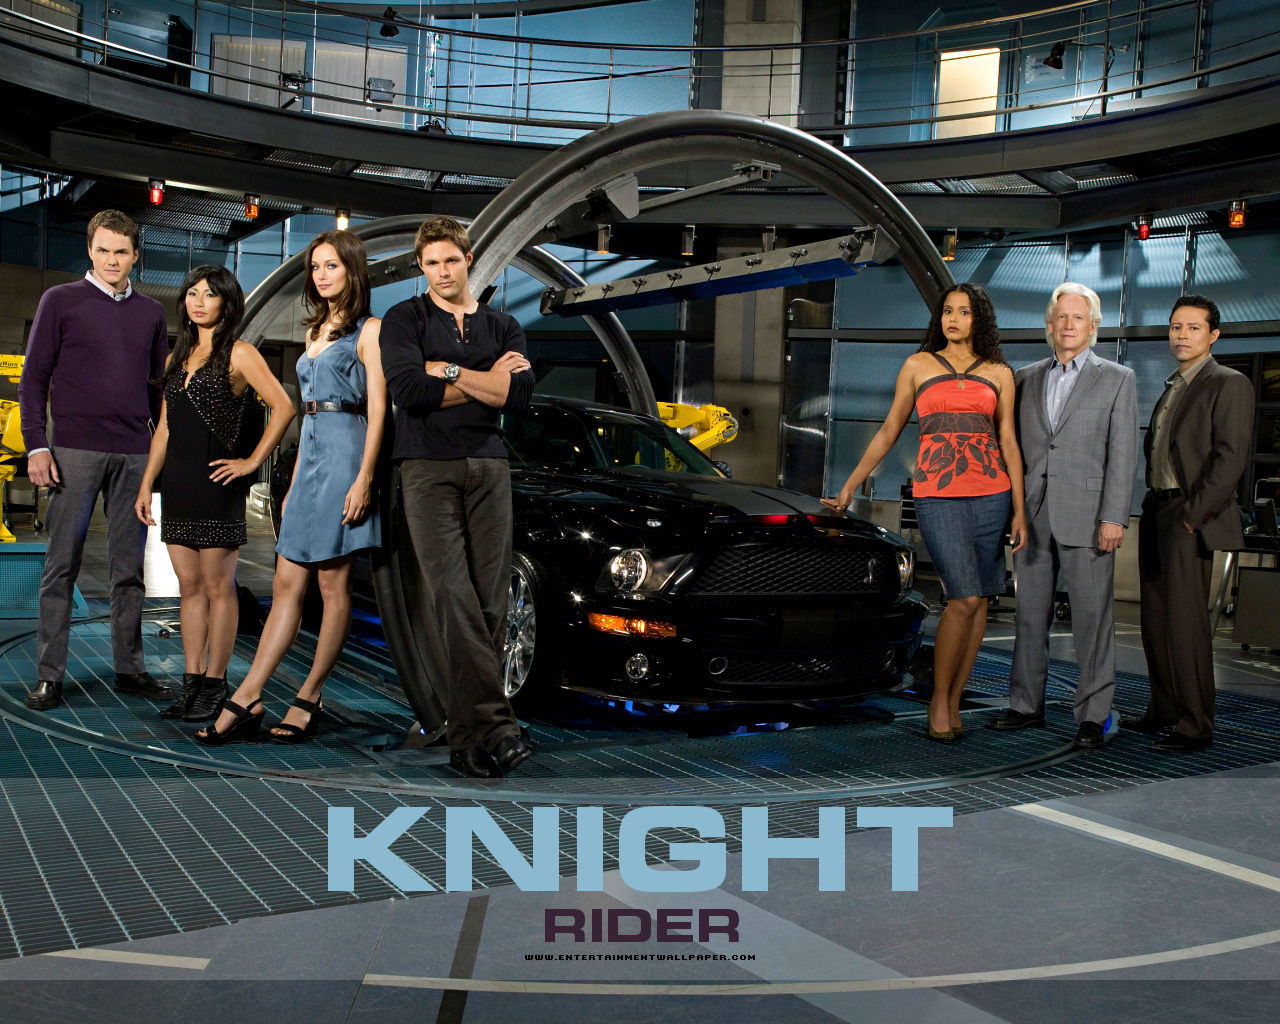 Knight Rider Wallpaper - Knight Rider New Season - HD Wallpaper 